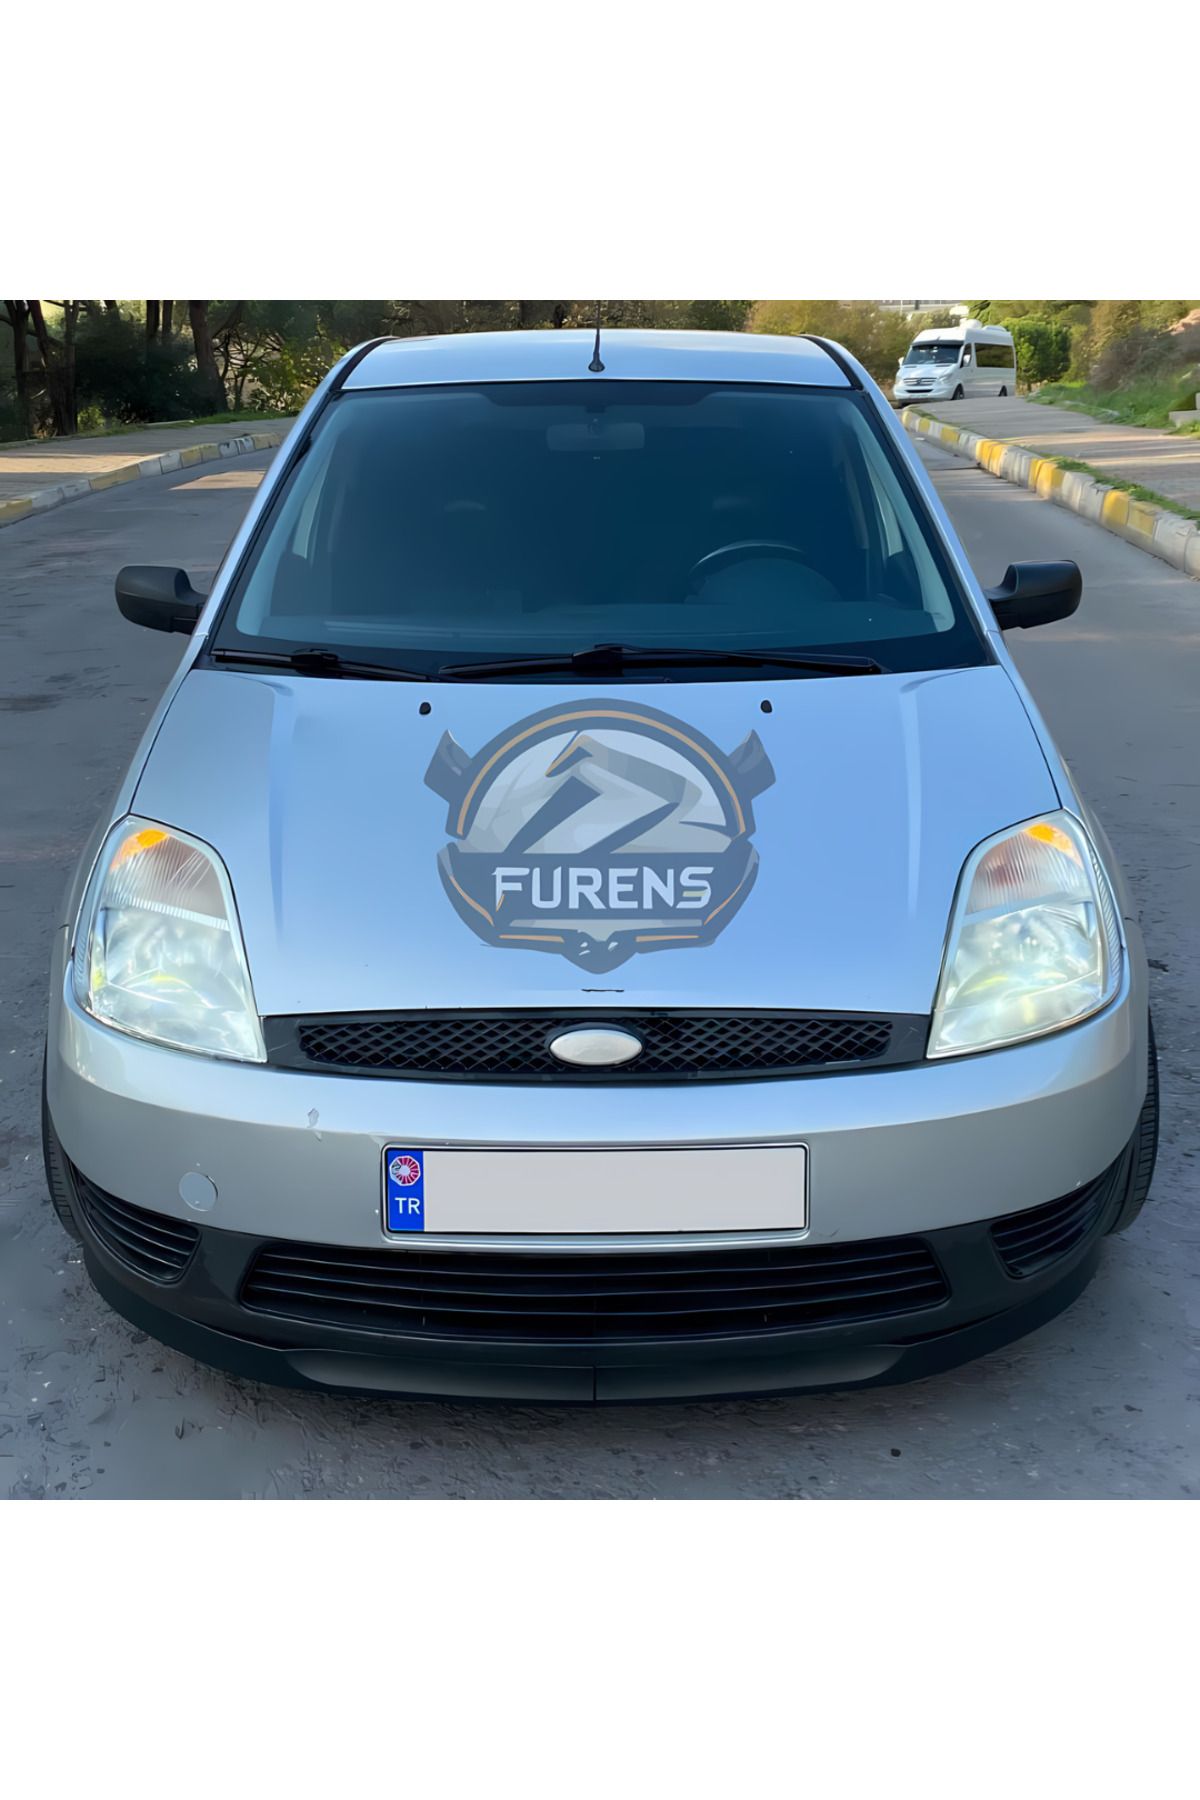 Furens Ford Fiesta 2002-2008 Uyumlu H lip Esnek Ön Lip 2 Parça Karlık Ön Ek Tampon Altı Dil